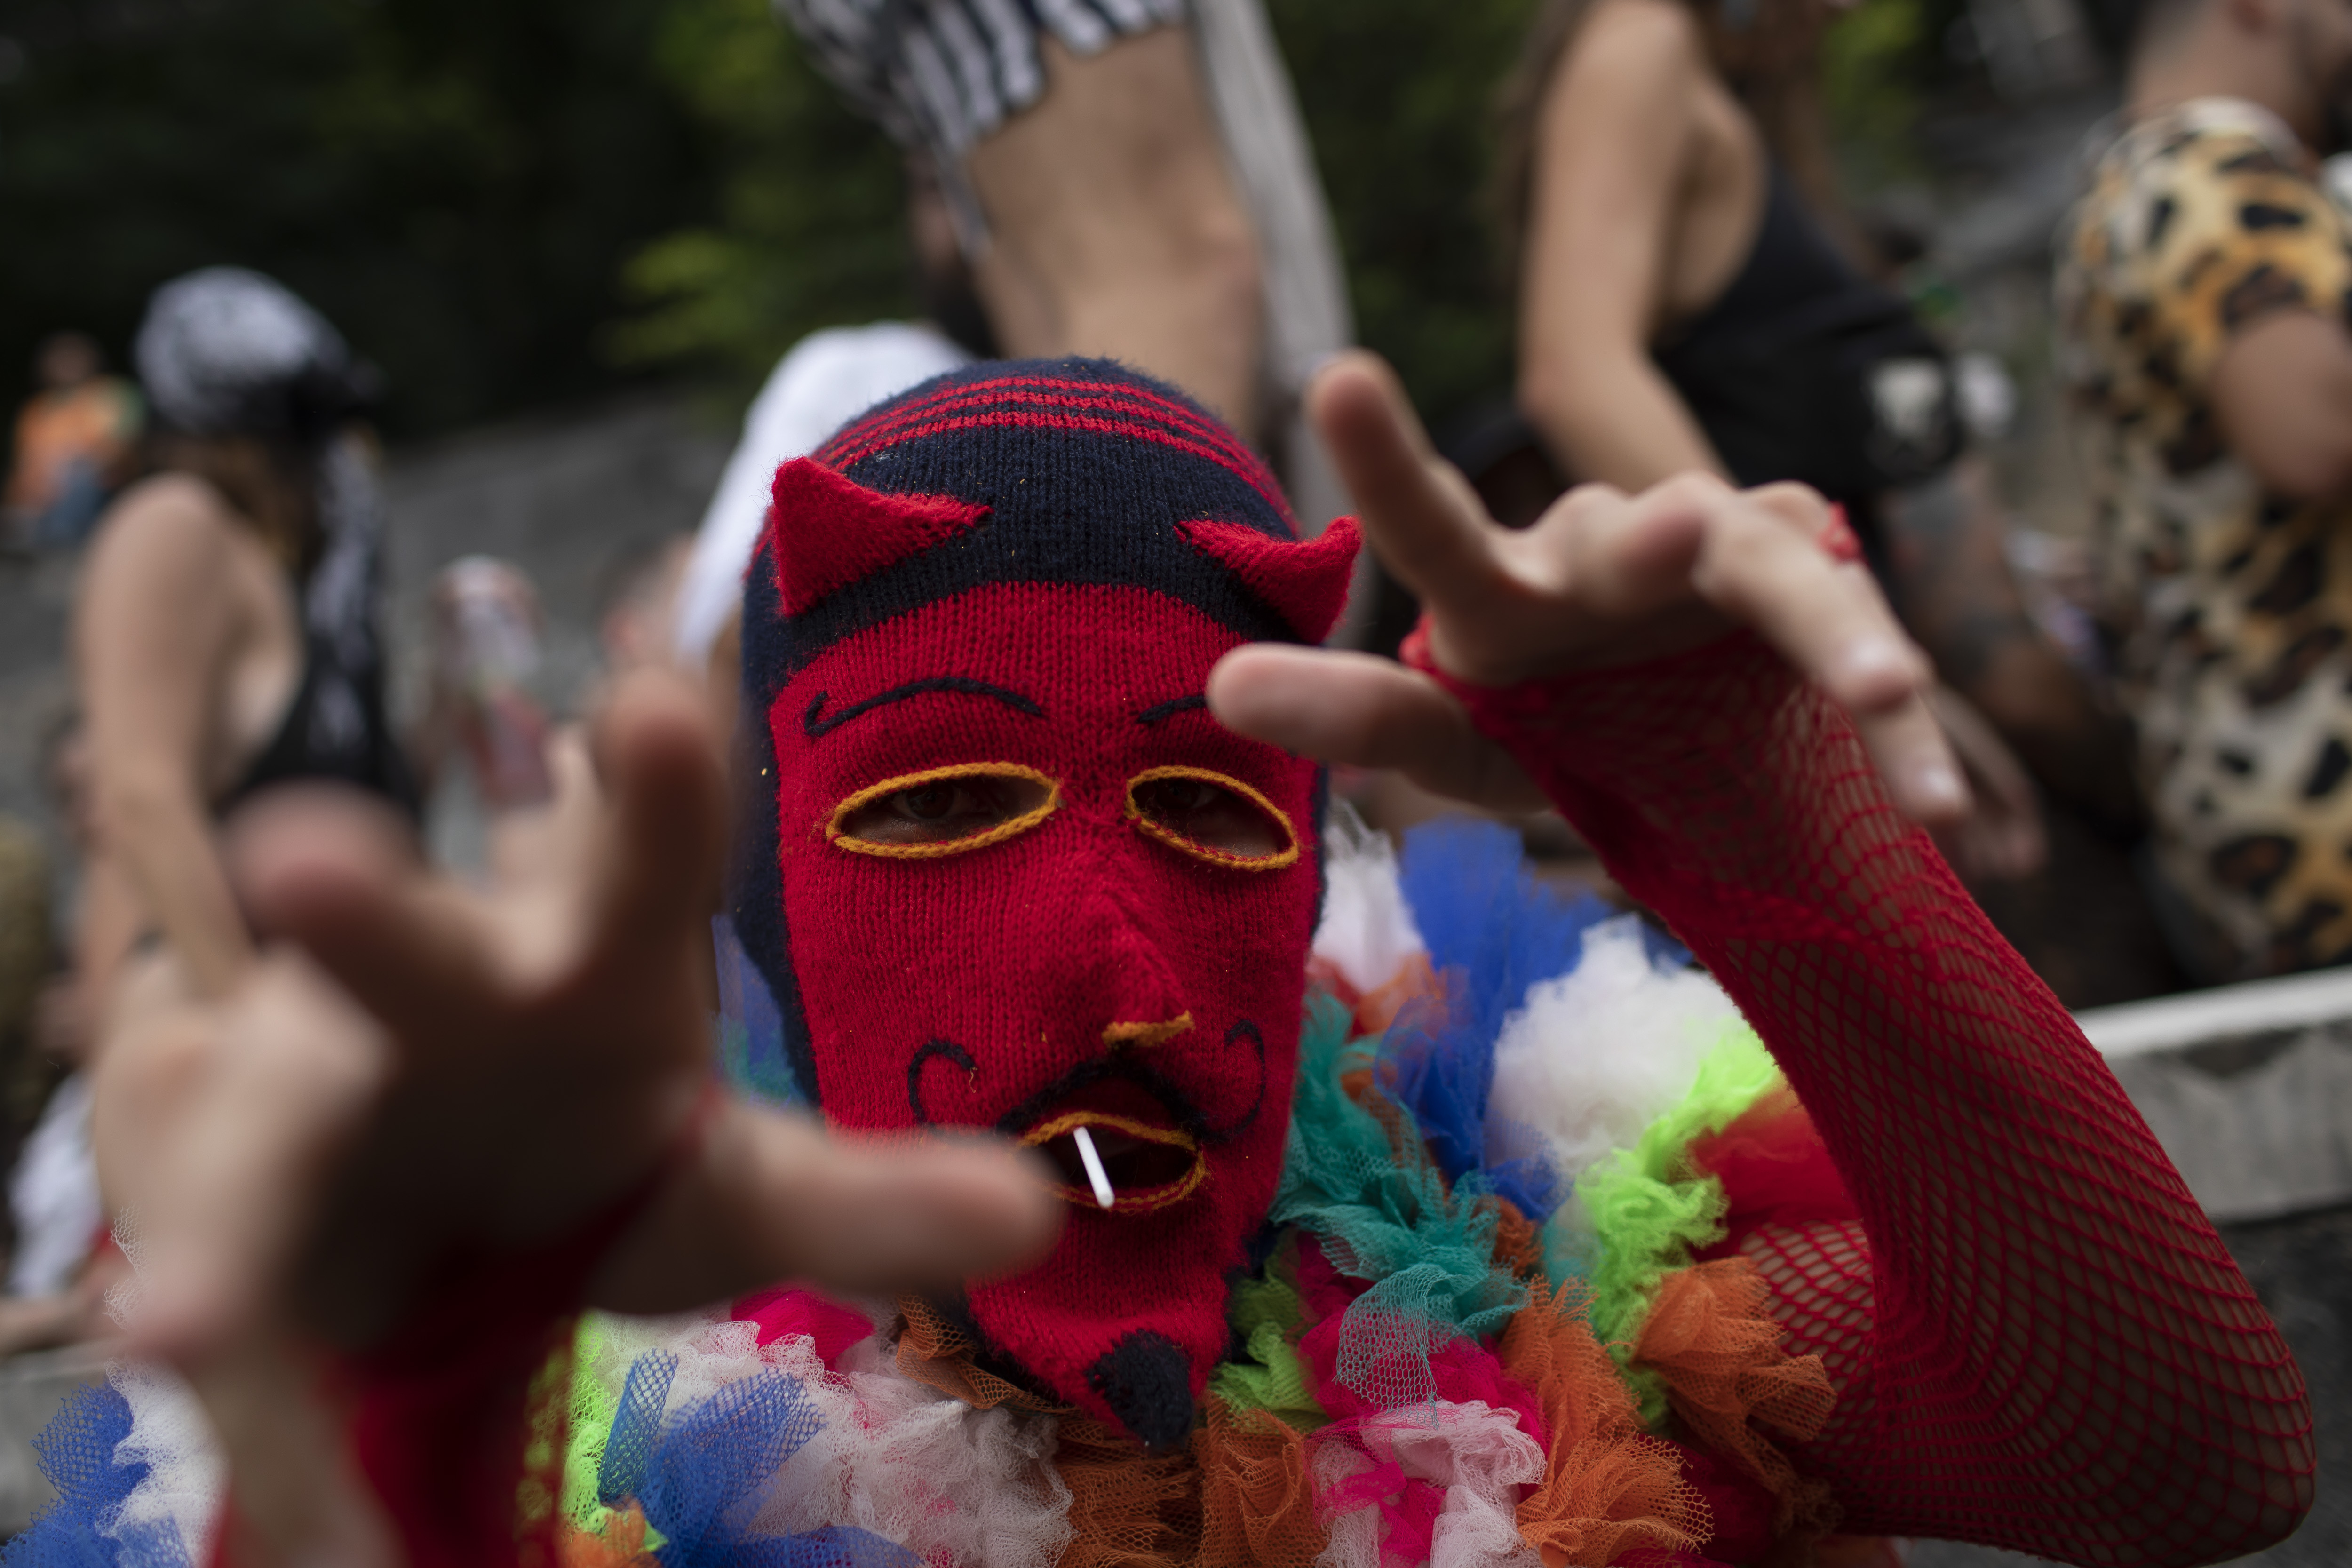 Un asistente lleva una máscara peruana durante una fiesta callejera previa al carnaval del grupo "Saturday Has Nothing", en Río de Janeiro, Brasil, el 28 de enero de 2023. El Carnaval de Río, mundialmente conocido, comienza el 17 de febrero. (AP Foto/Bruna Prado)